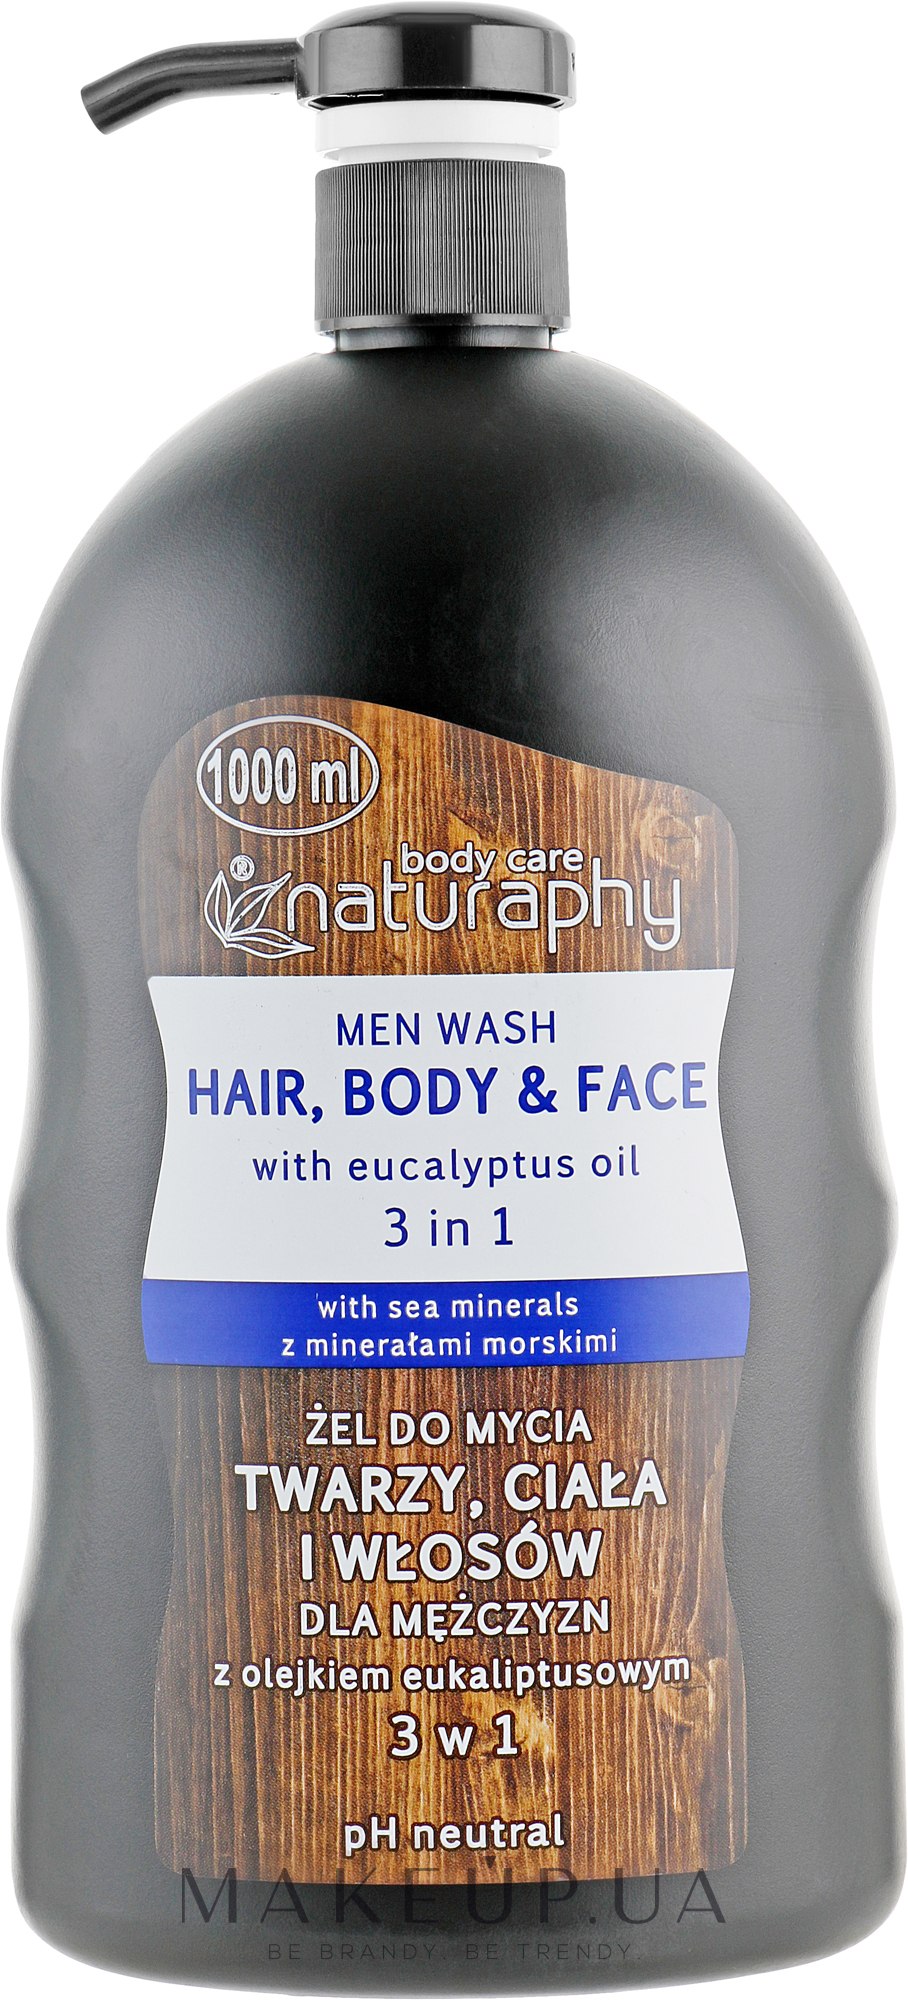 Гель-шампунь для тела и волос с маслом эвкалипта для мужчин - Naturaphy Men Wash Hair, Body And Face — фото 1000ml